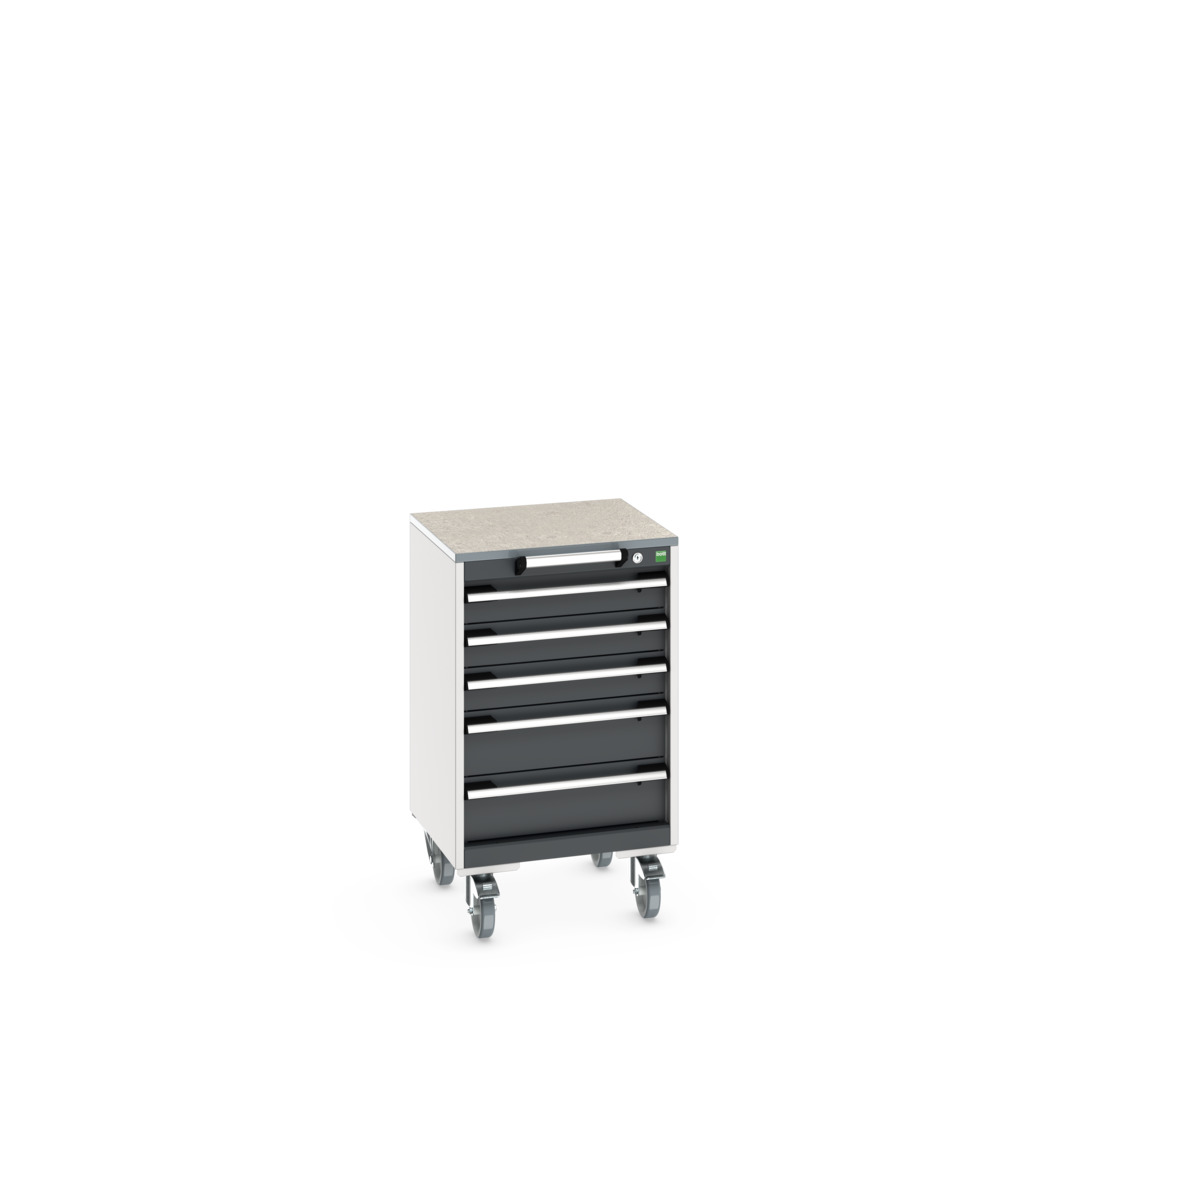 40402138. - cubio mobile cabinet